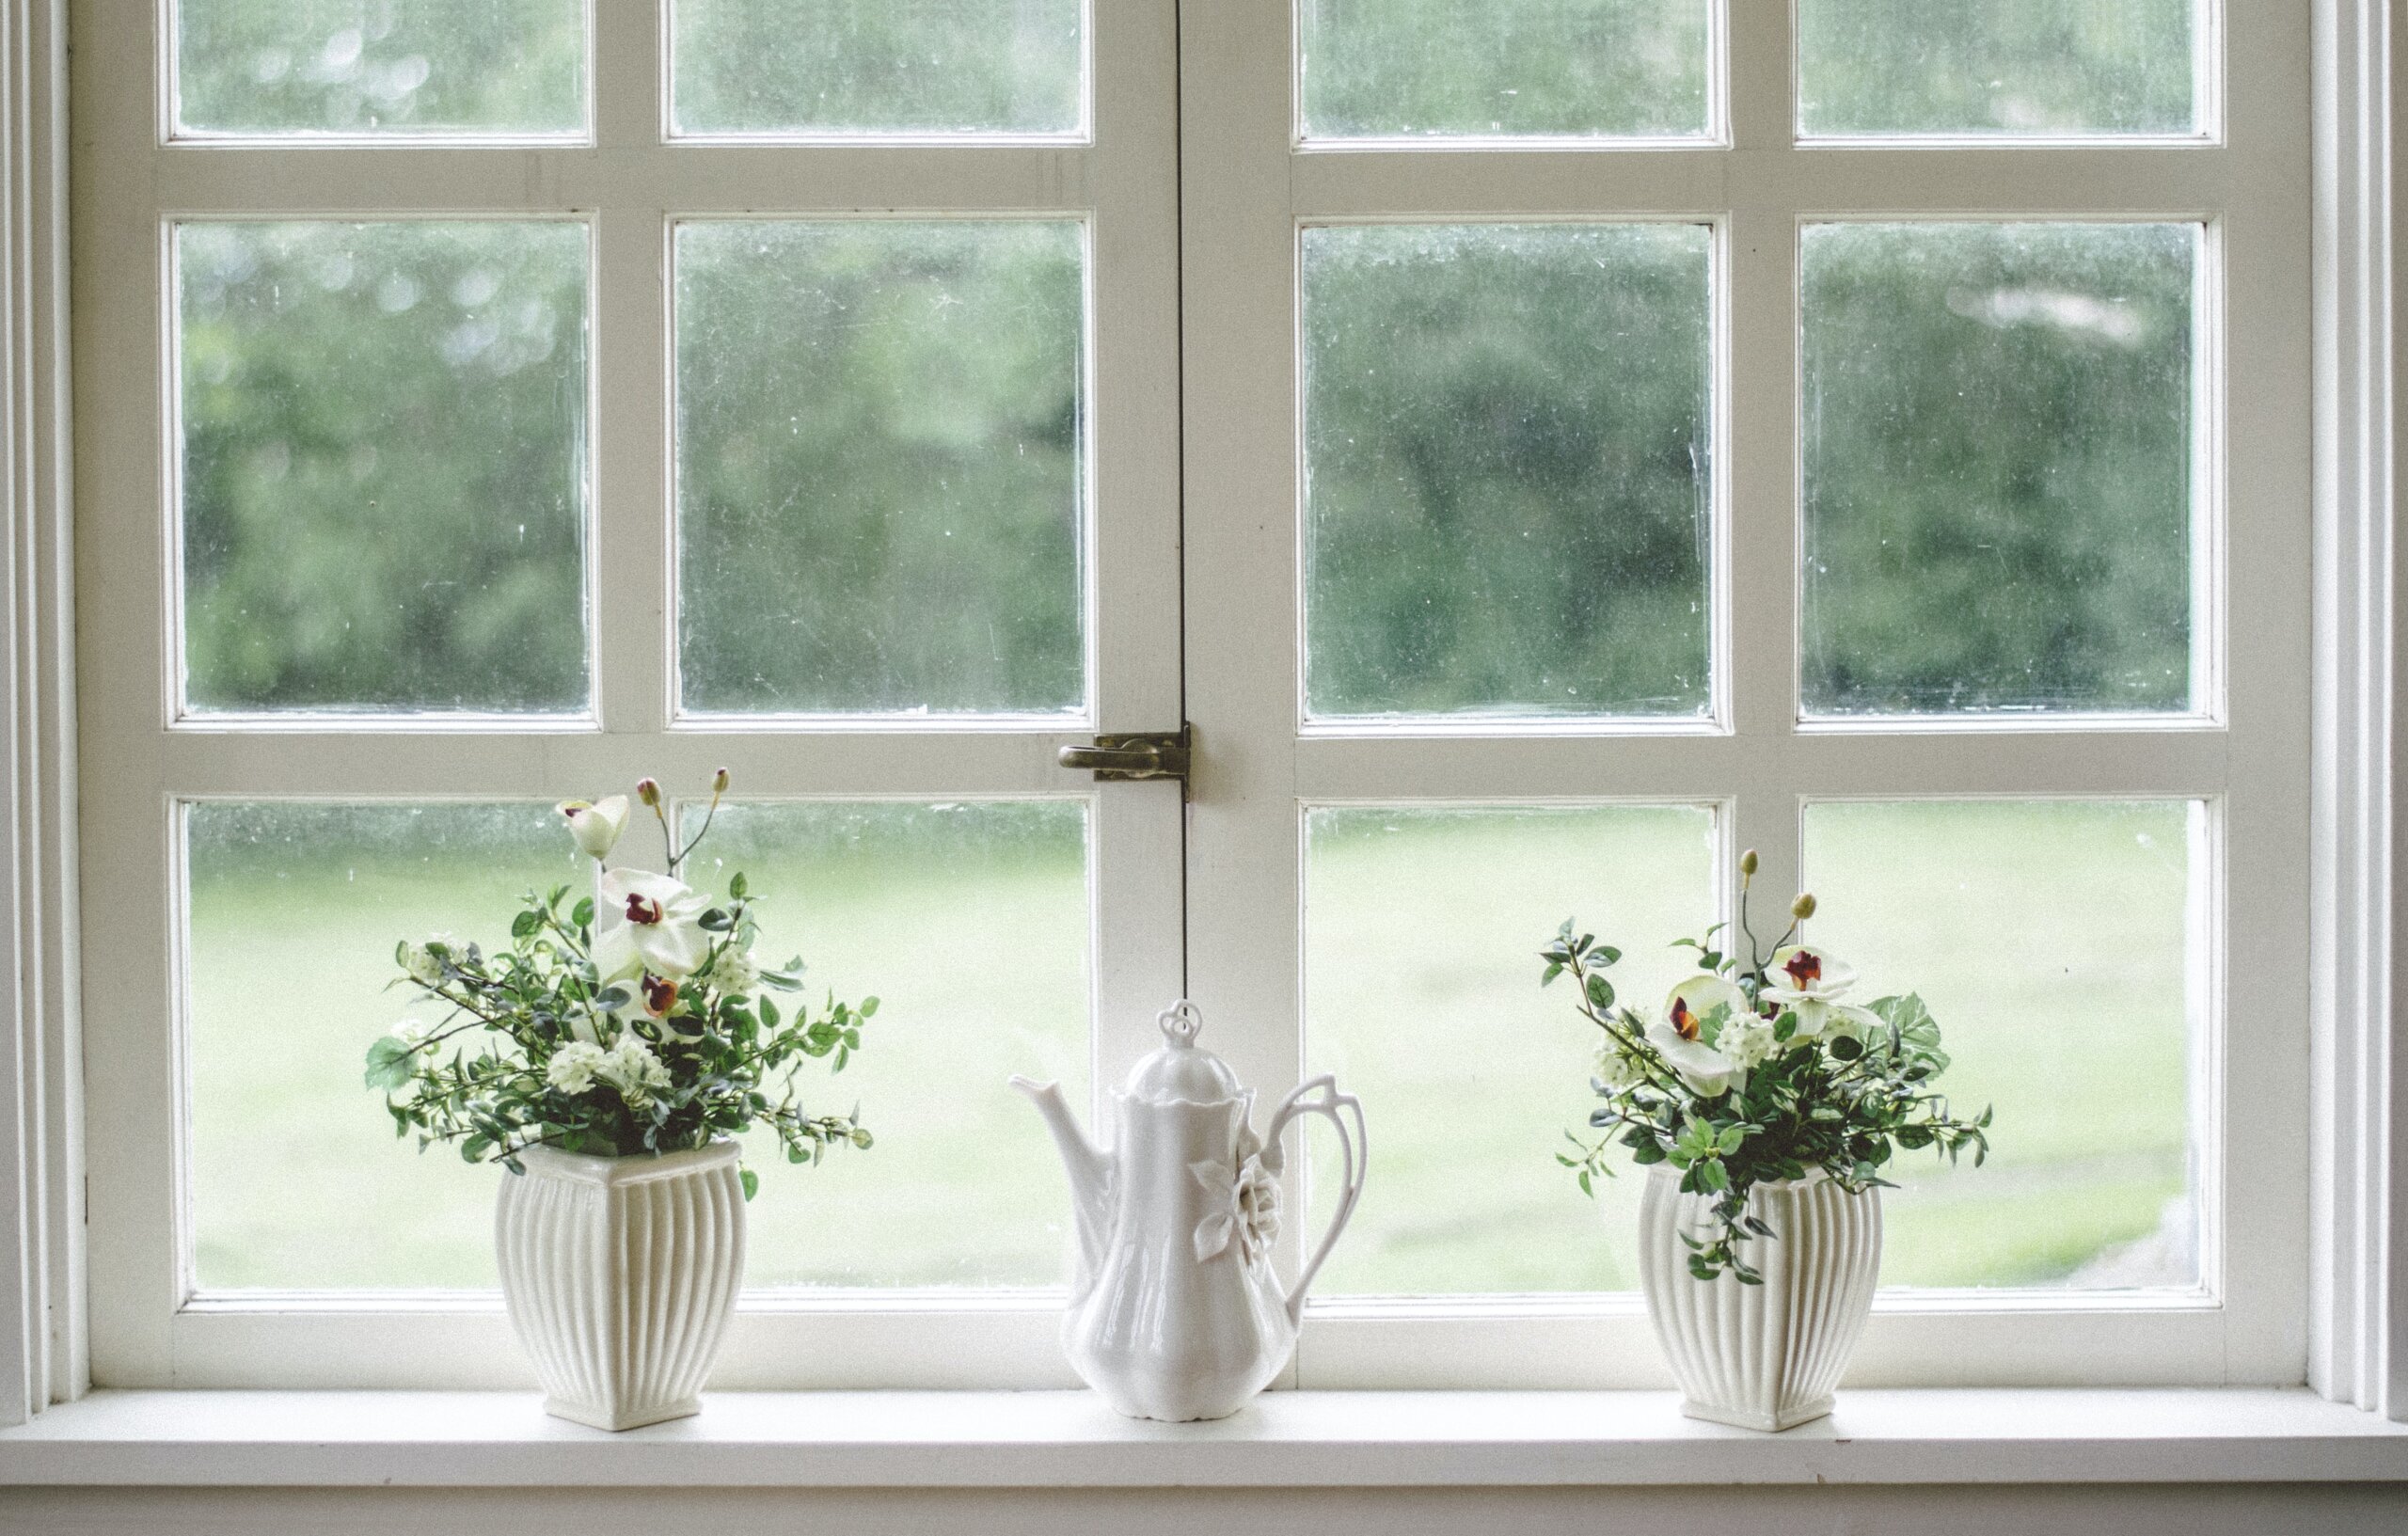 prozor s bijelom prozorskom klupčicom na kojoj su dvije bijele tegle s cvijećem i porculanski čajnik u sredini